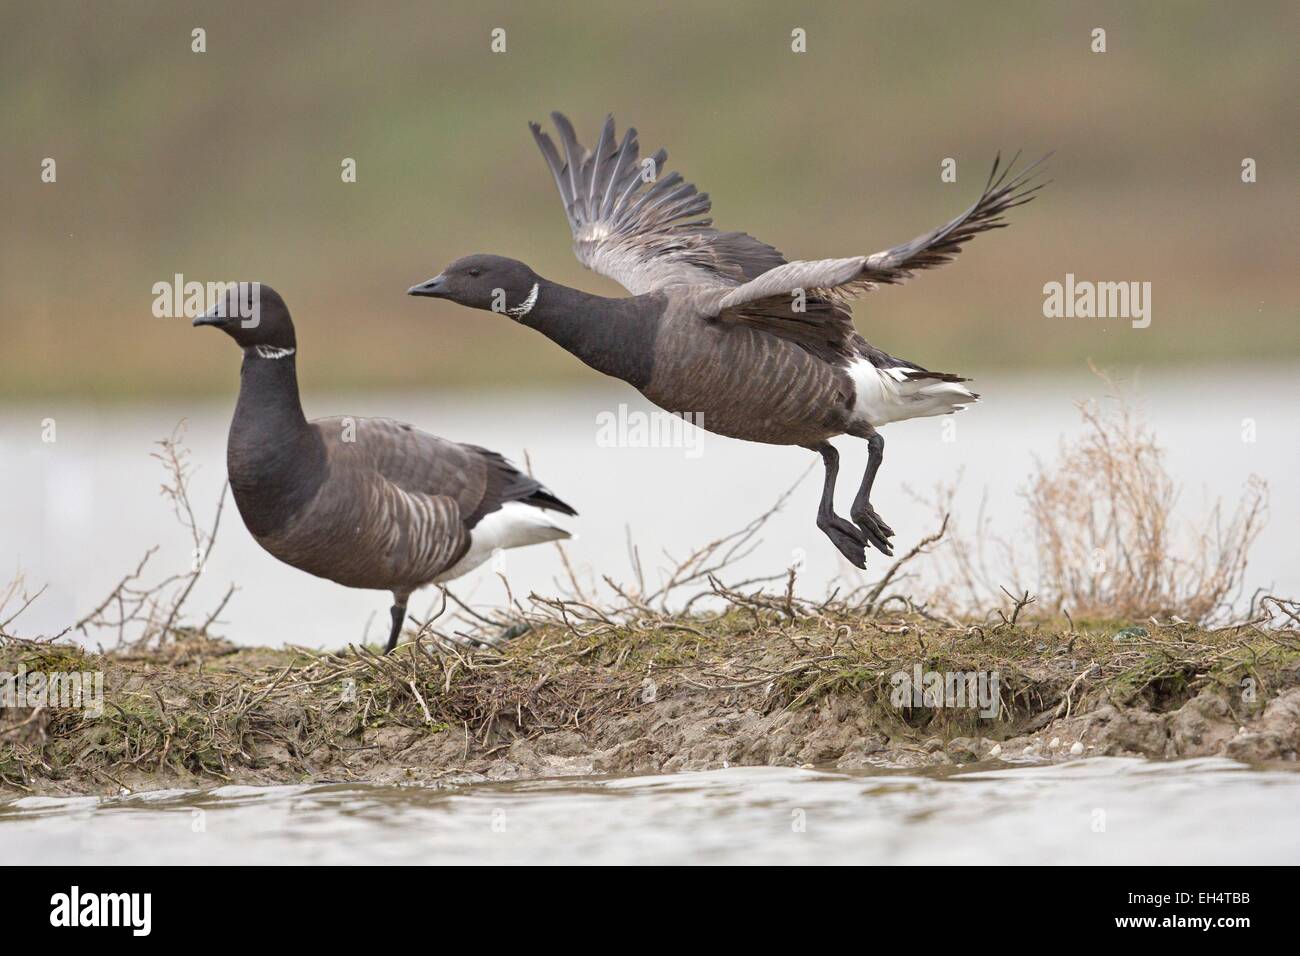 Francia, Vendee, Bouin, Brent goose (Branta bernicla) Foto Stock